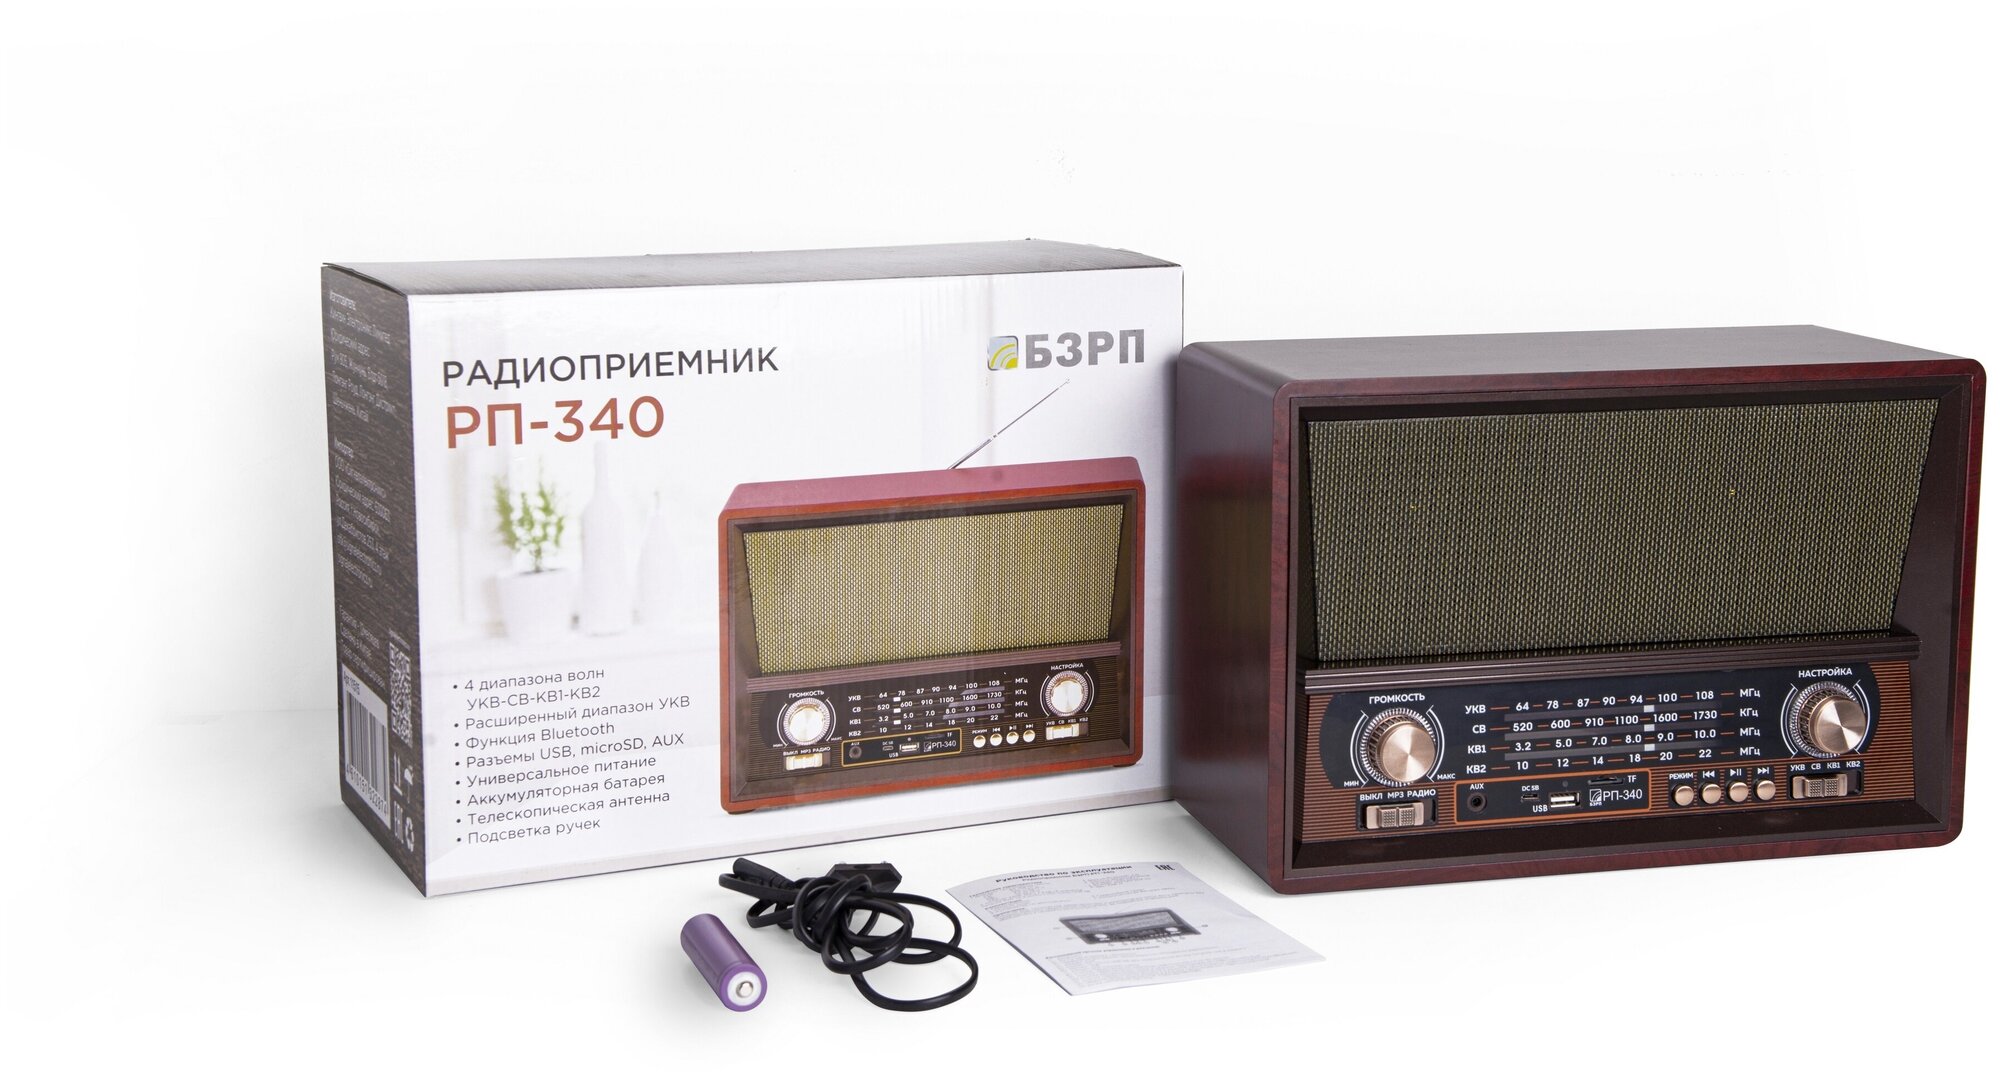 Ретро радиоприемник БЗРП РП-340 с встроенным аккумулятором / Bluetooth 50 / УКВ СВ КВ1-2 / FM / воспроизведение с USB microSD AUX